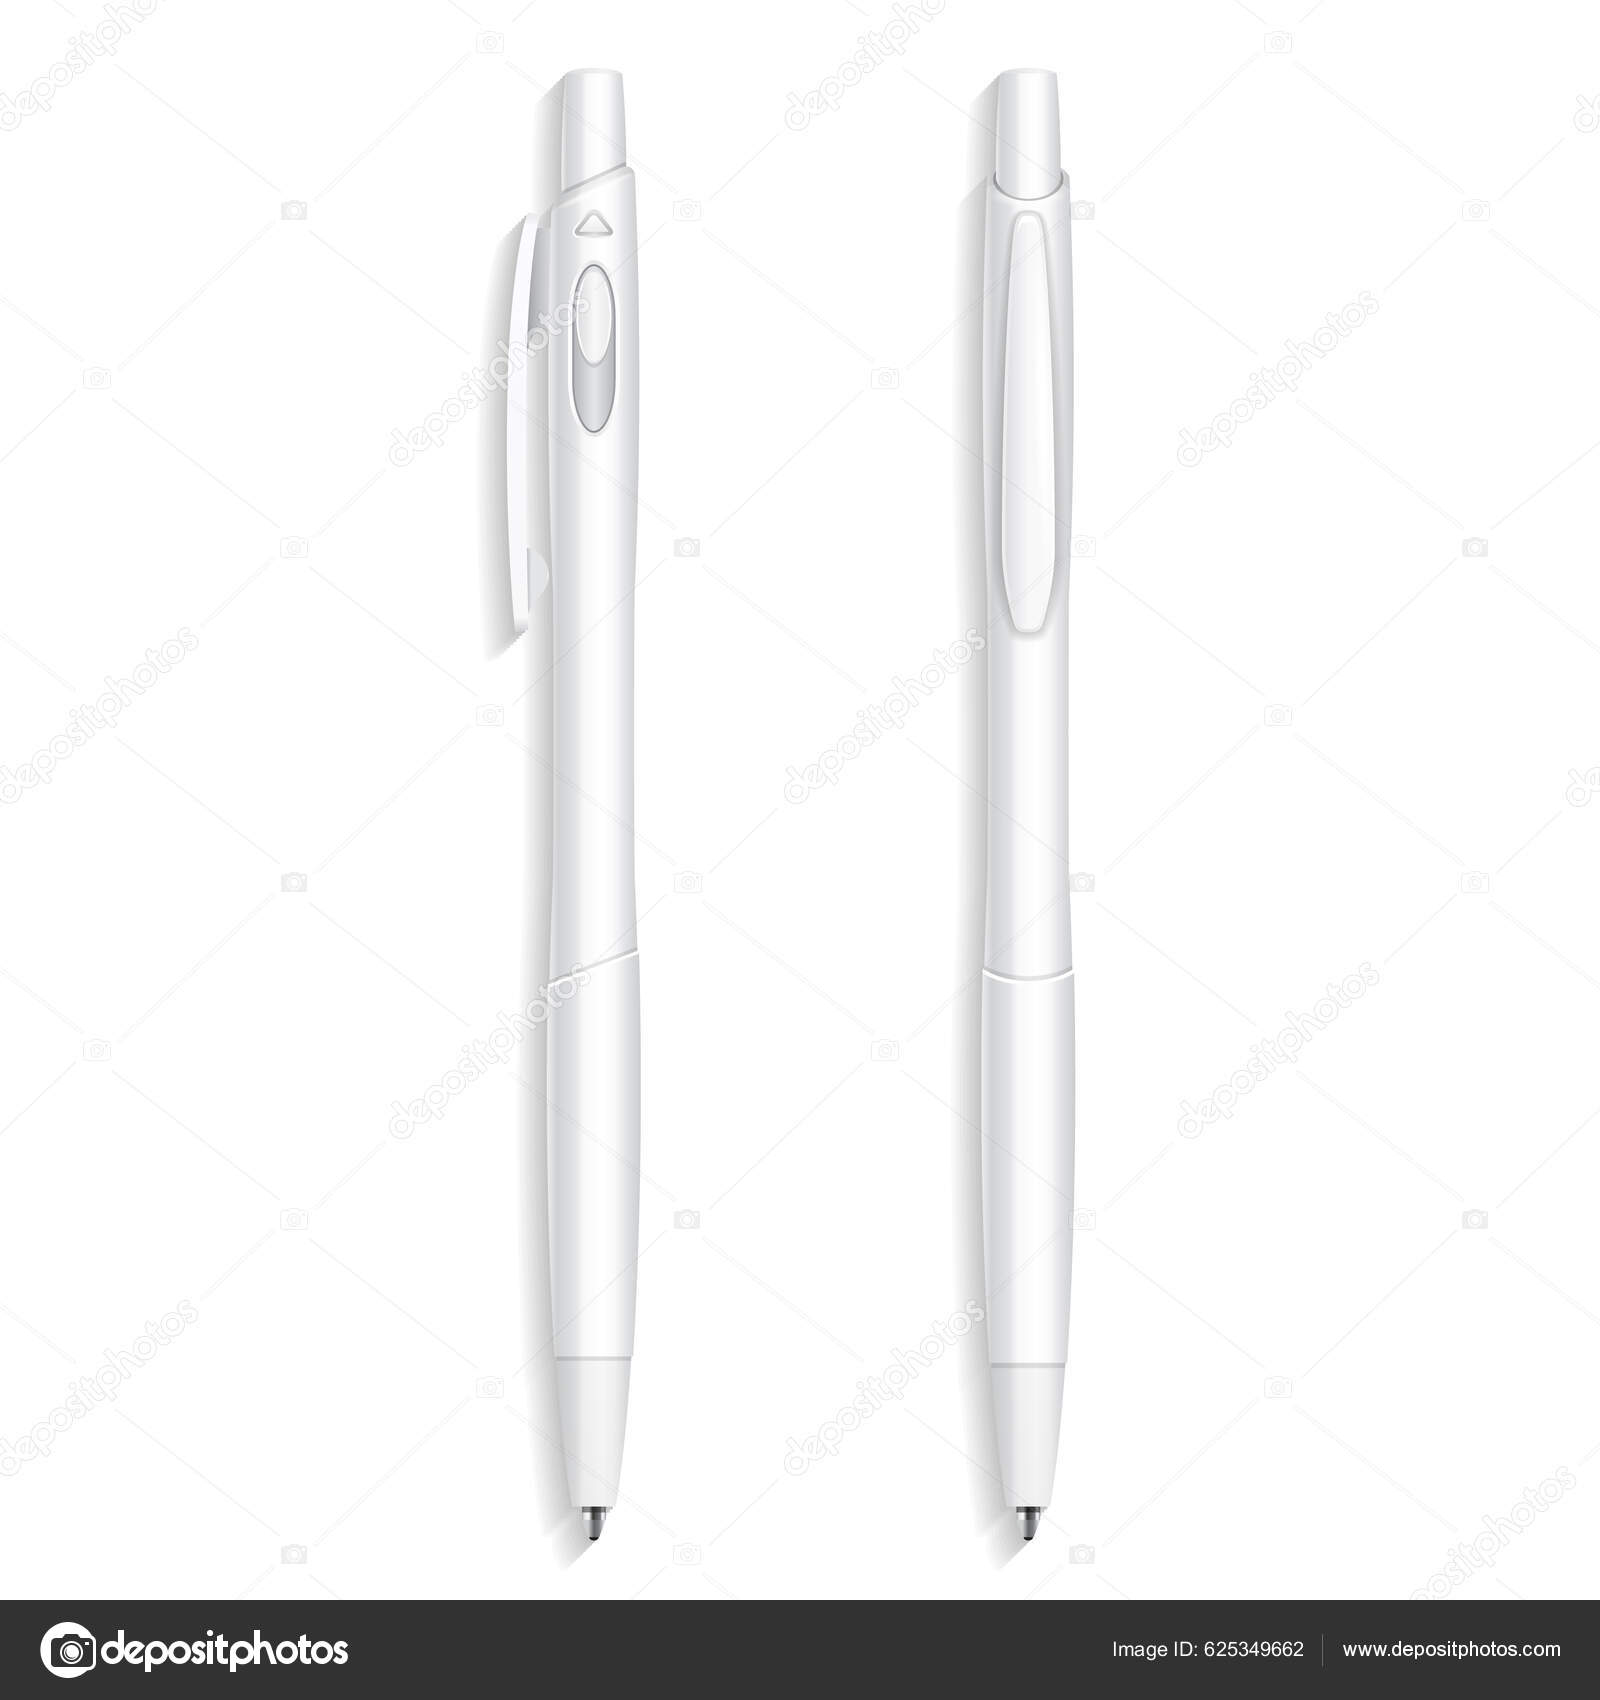 https://st5.depositphotos.com/3459715/62534/v/1600/depositphotos_625349662-stock-illustration-mockup-ballpoint-pen-pencil-marker.jpg